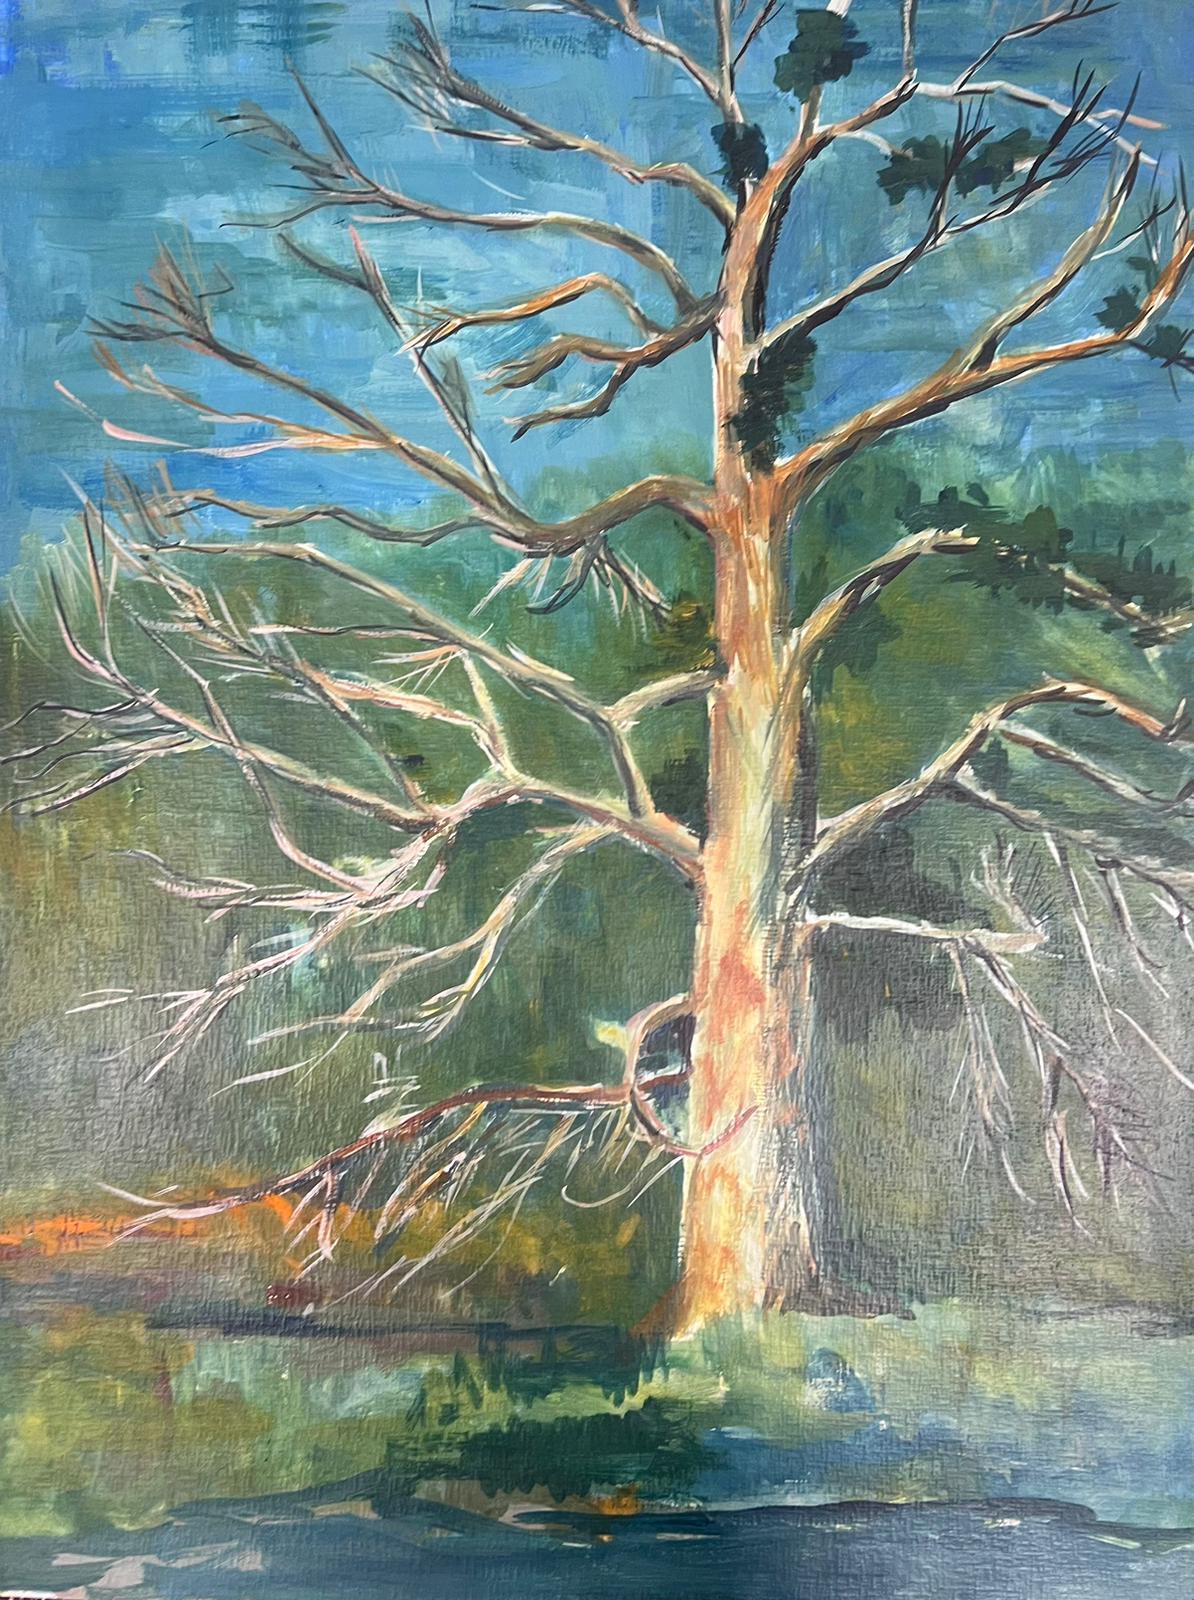 Landscape Painting Bernard Labbe - Peinture moderniste du 20ème siècle - Grand arbre dénudé au-dessus d'un paysage de banque de rivières